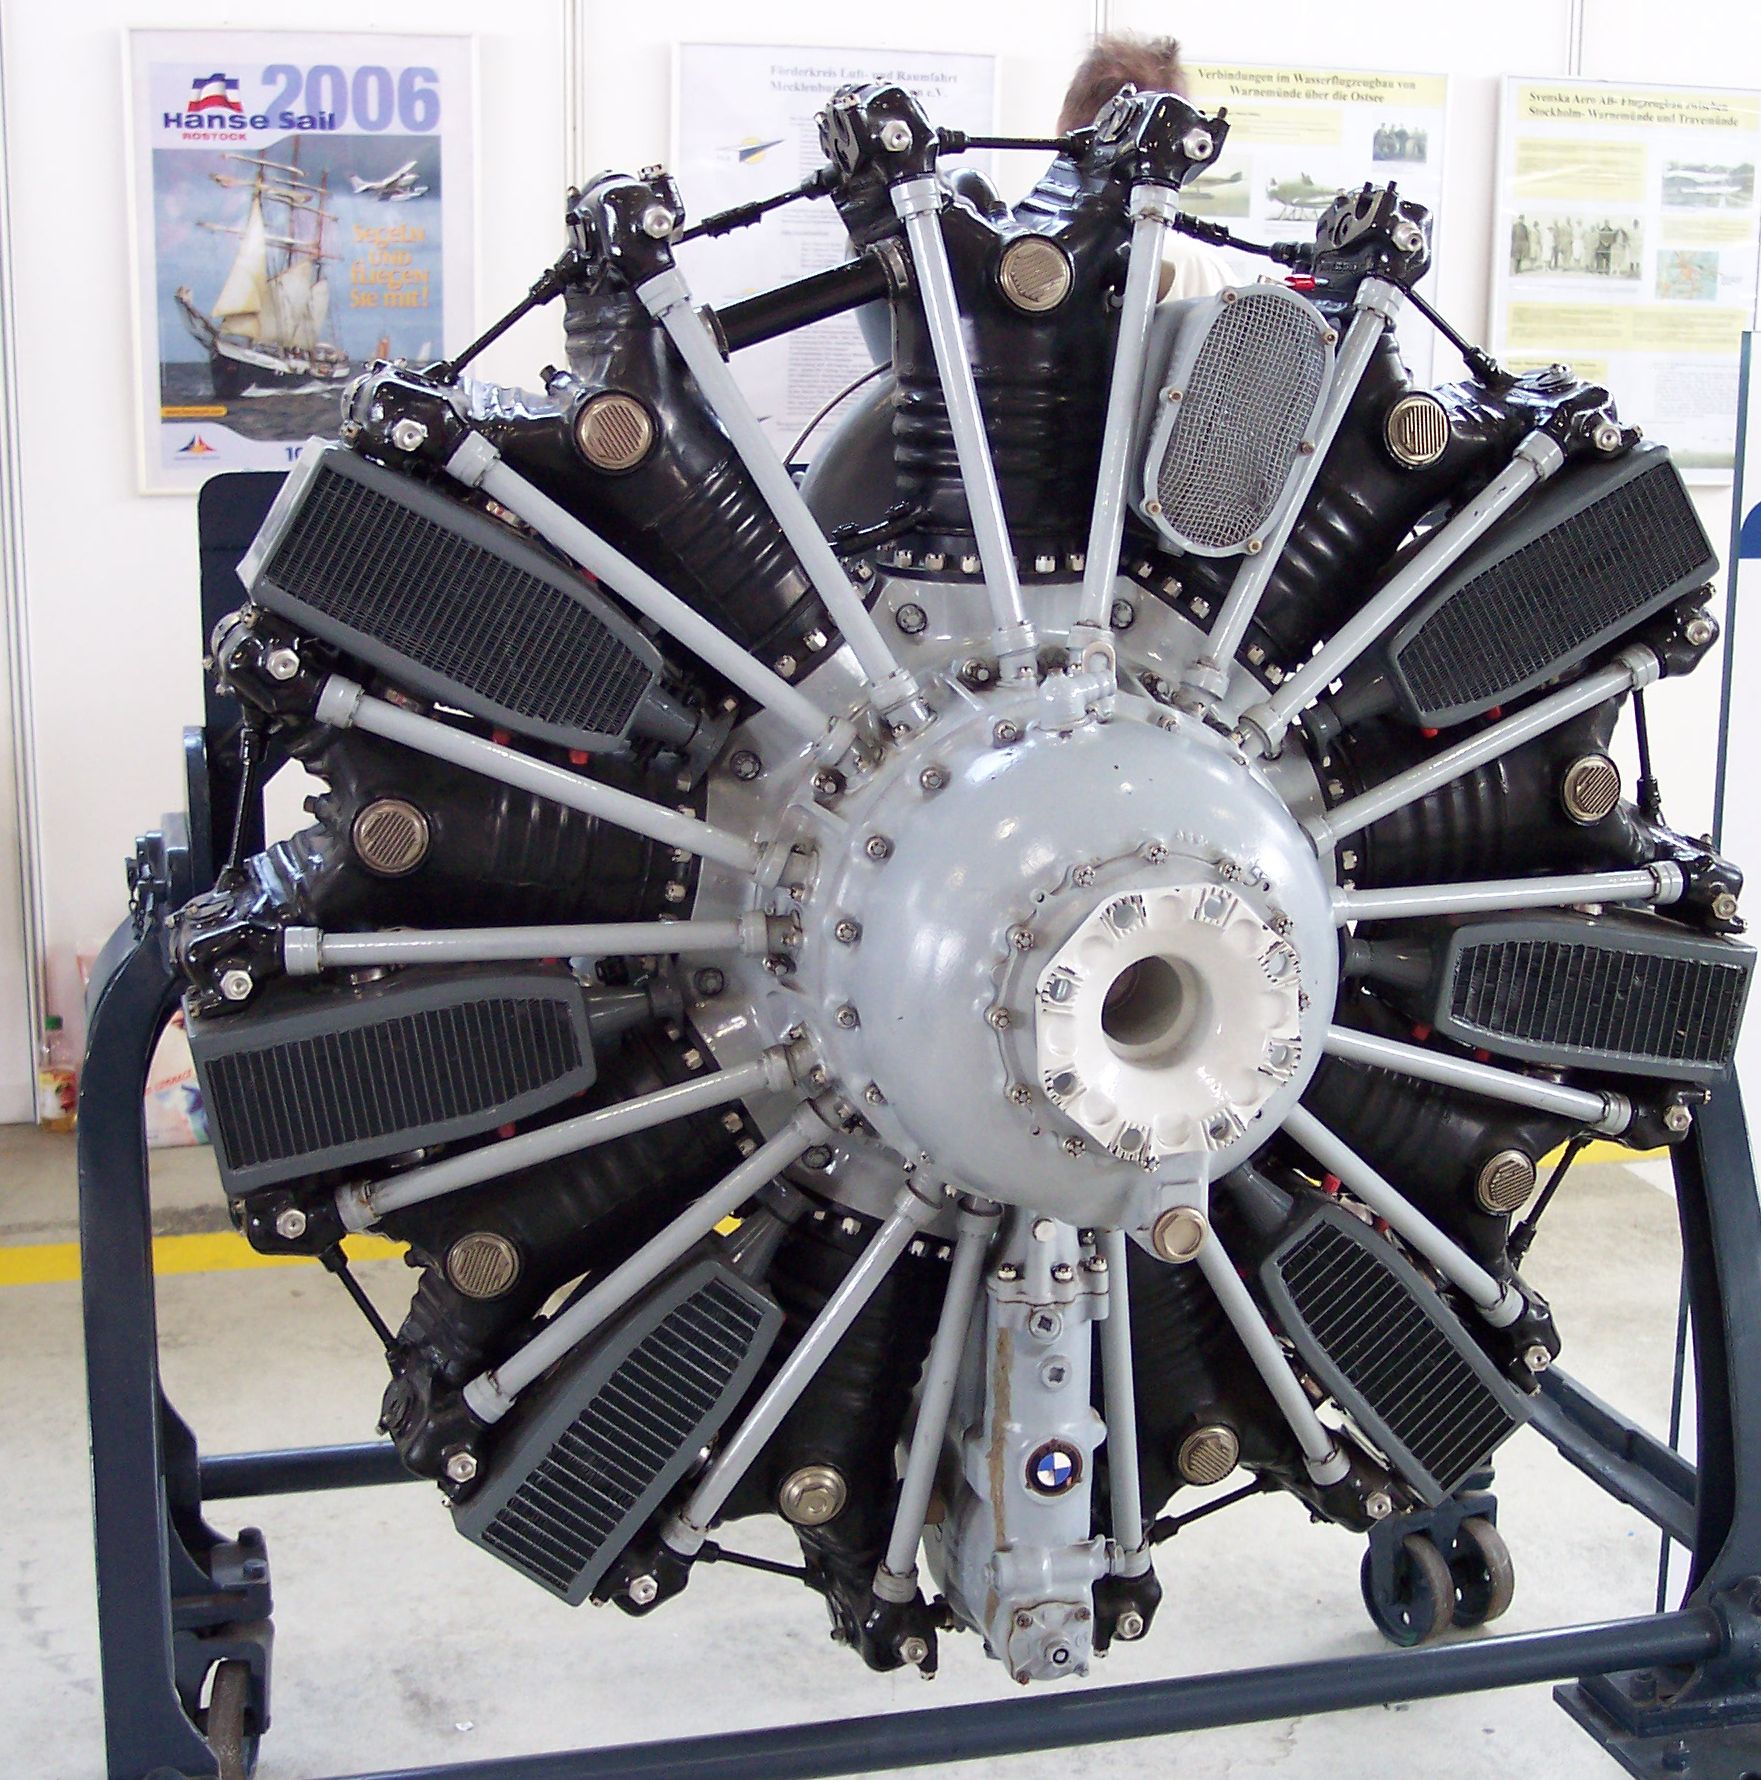 file-bmw-114-radial-diesel-engine-jpg-wikipedia